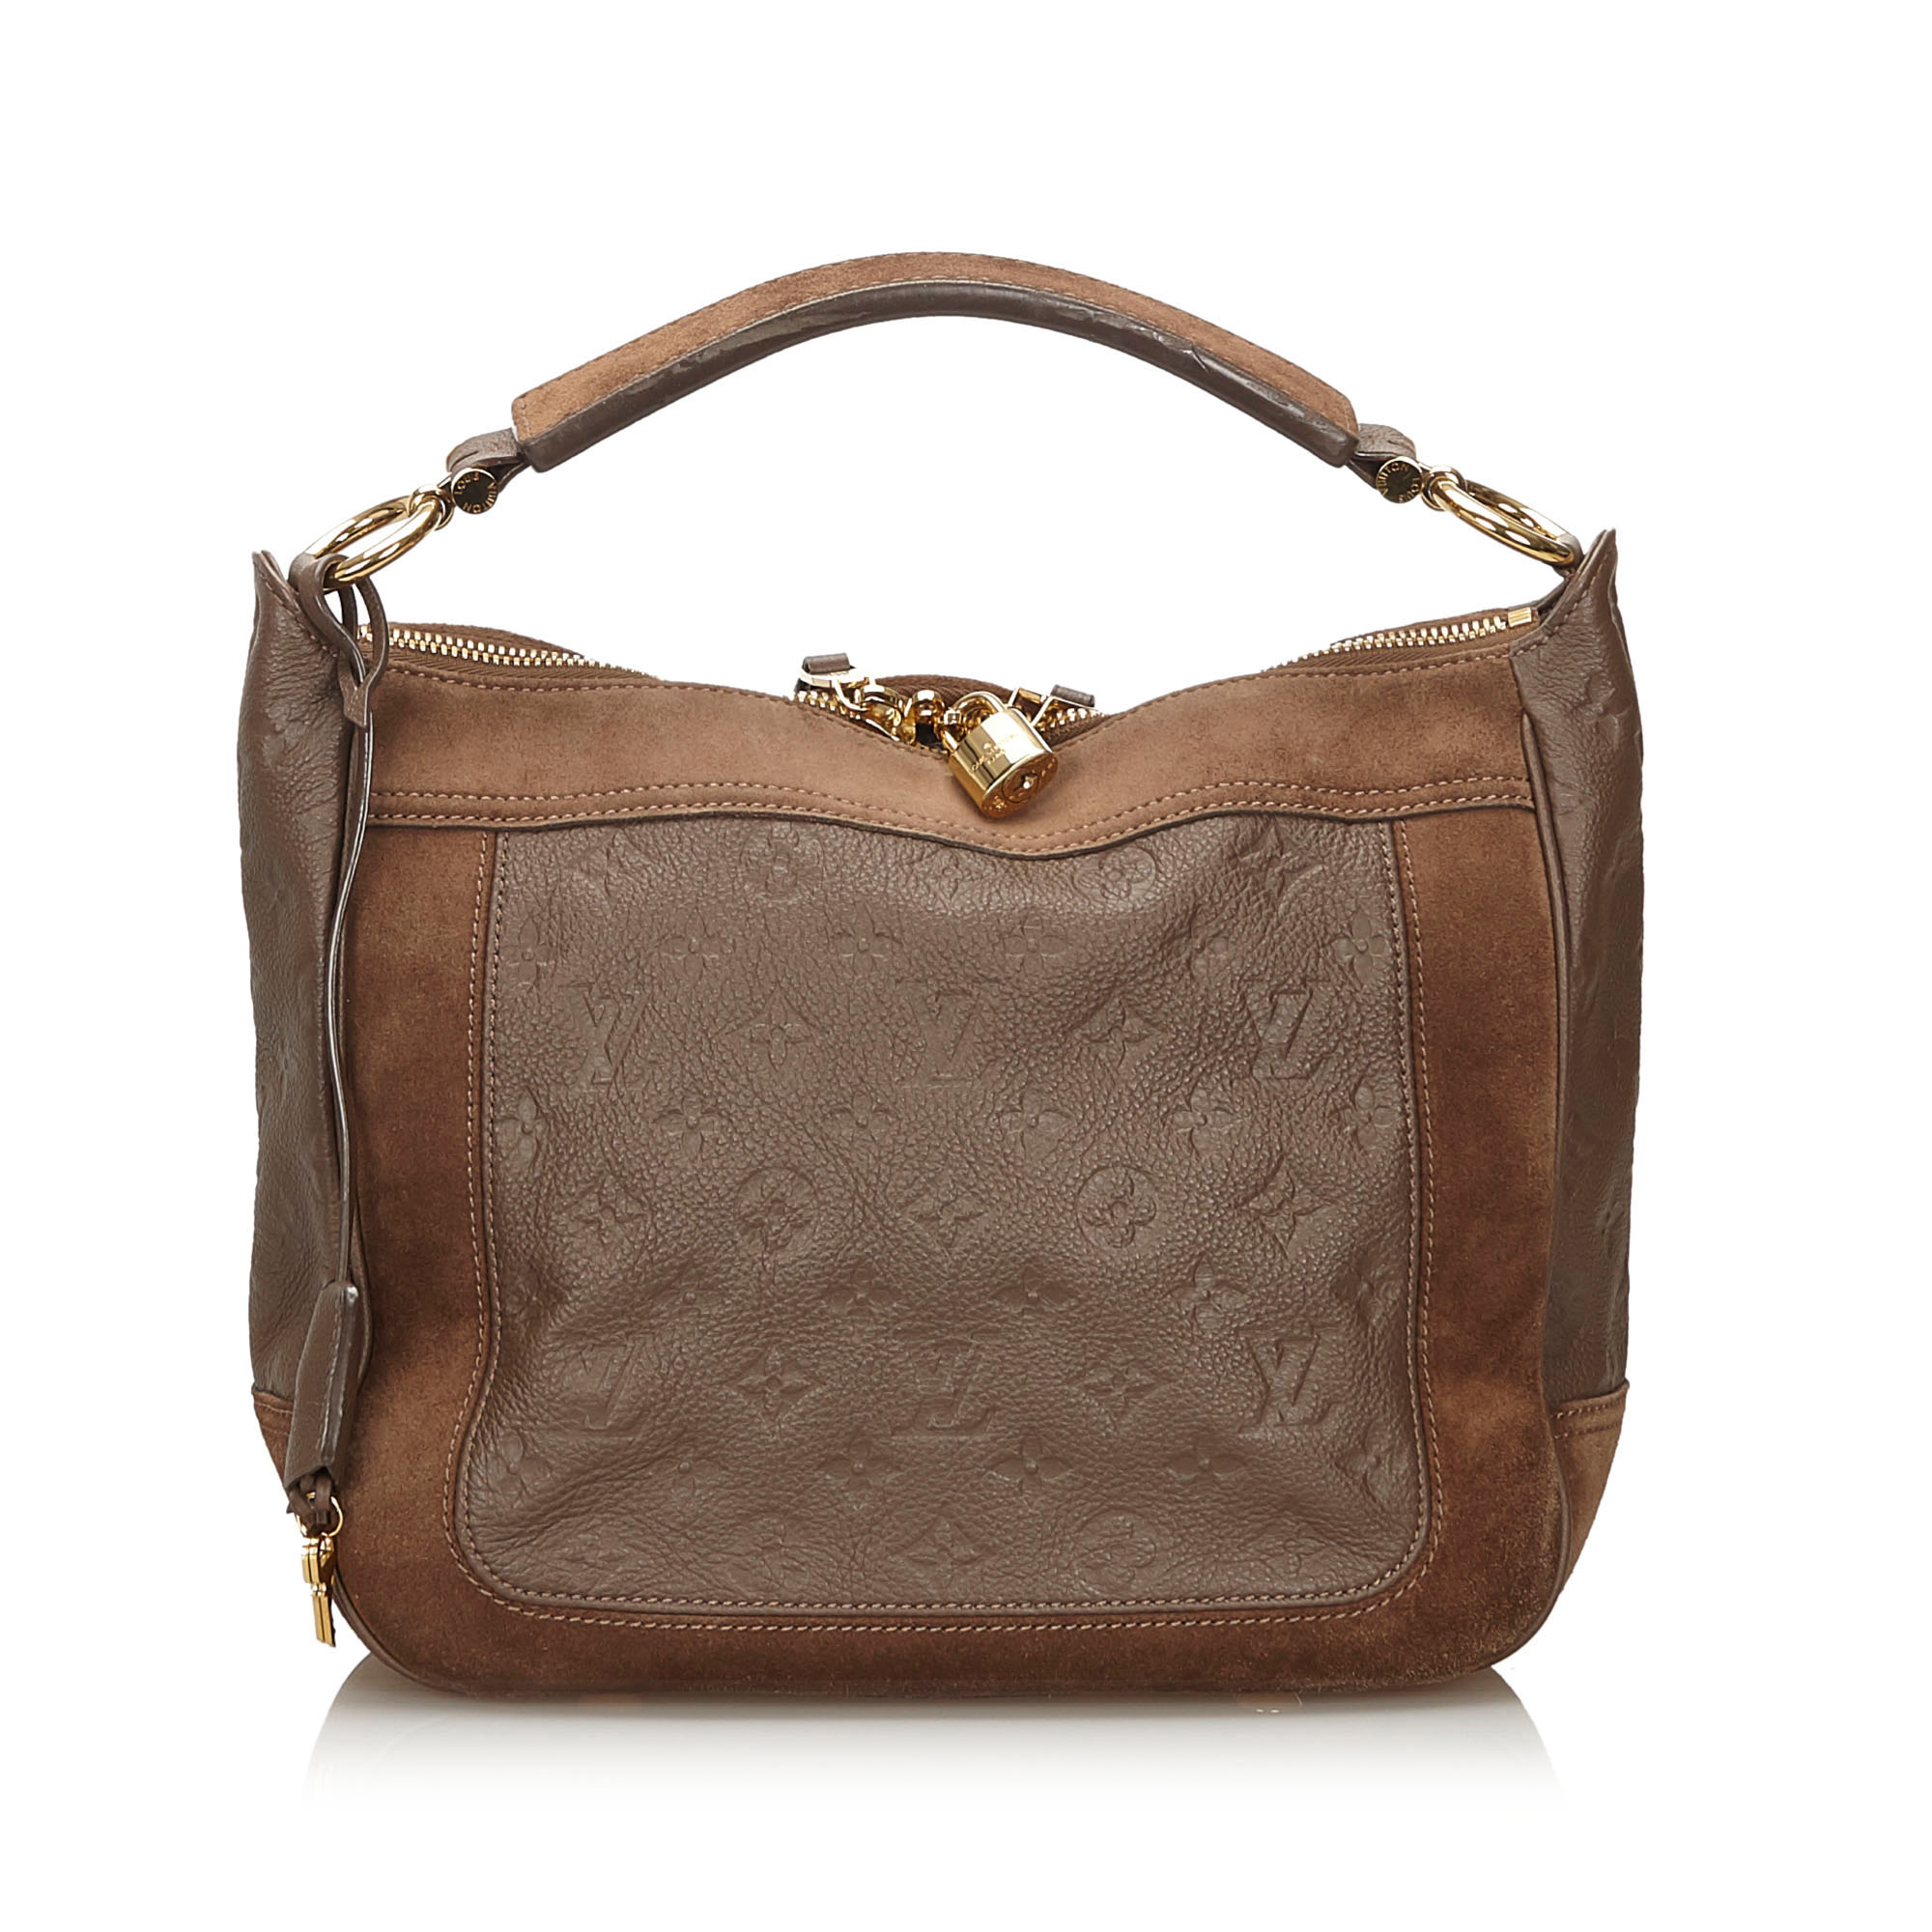 Louis Vuitton Papillon Handbag 340235